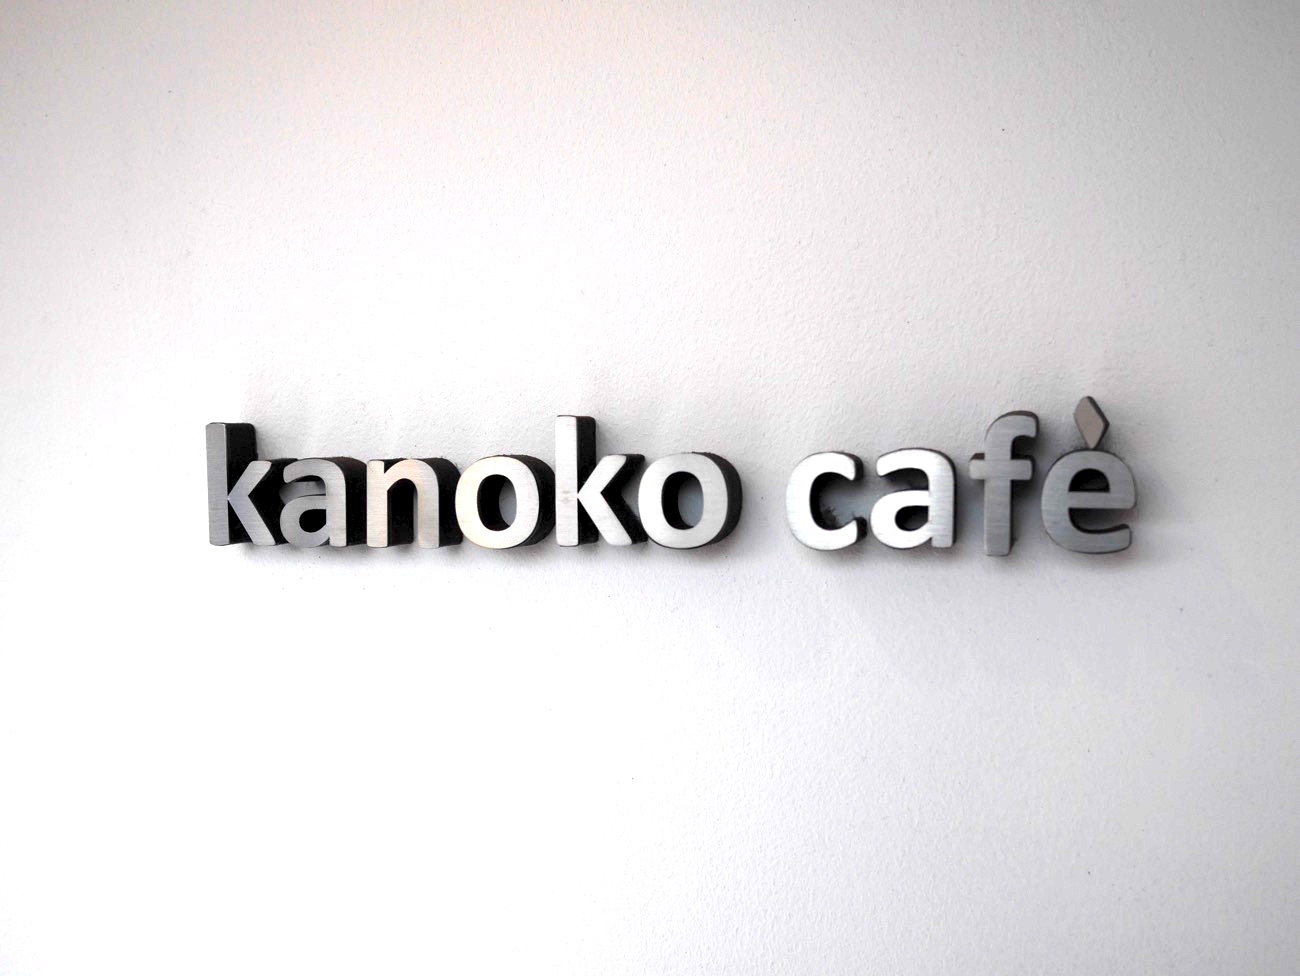 kanoko cafe